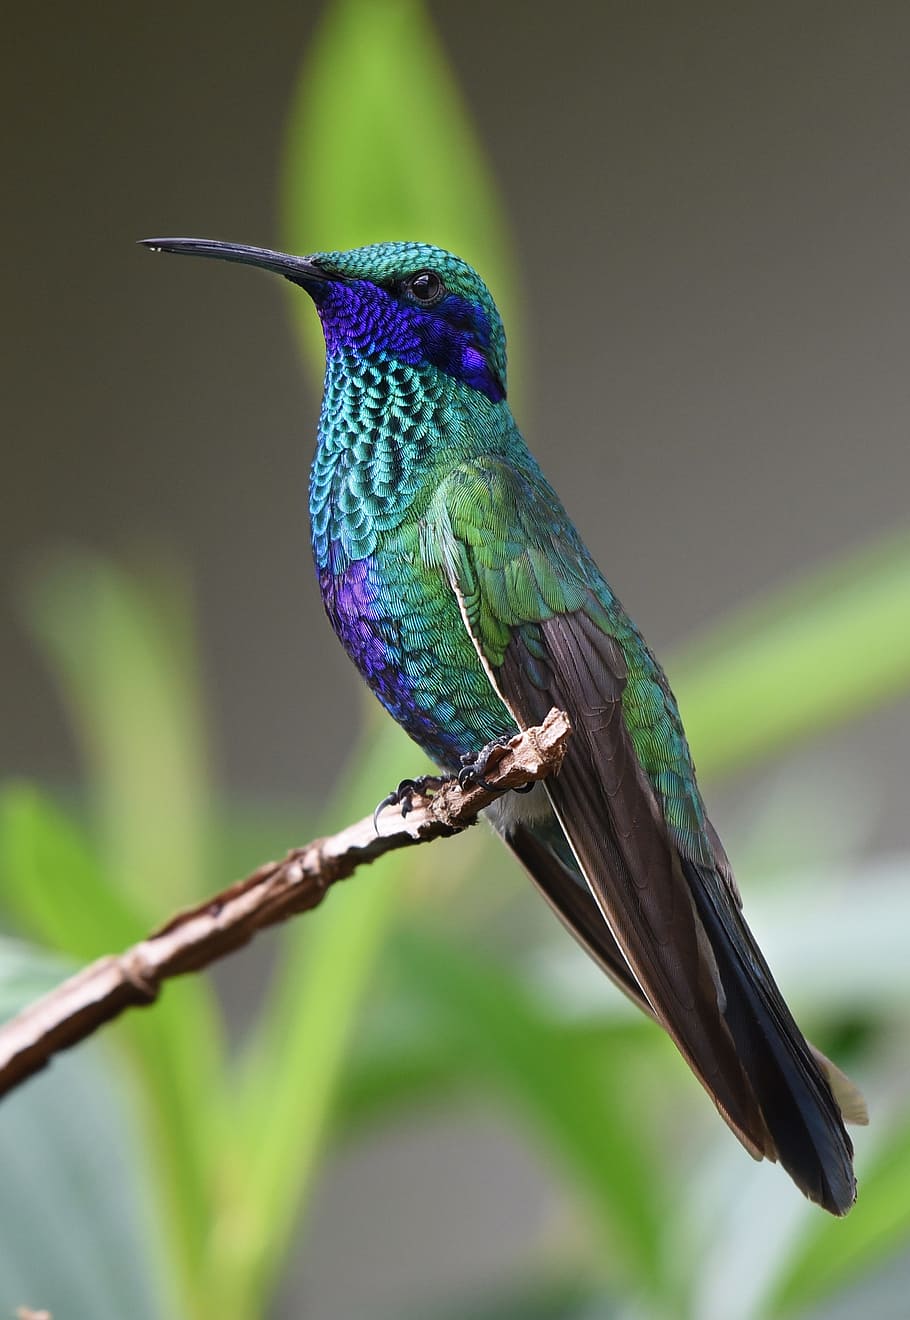 selectivo, fotografía de enfoque, magnífico, colibrí, pájaro, naturaleza, tropical, alas, animal, fauna silvestre